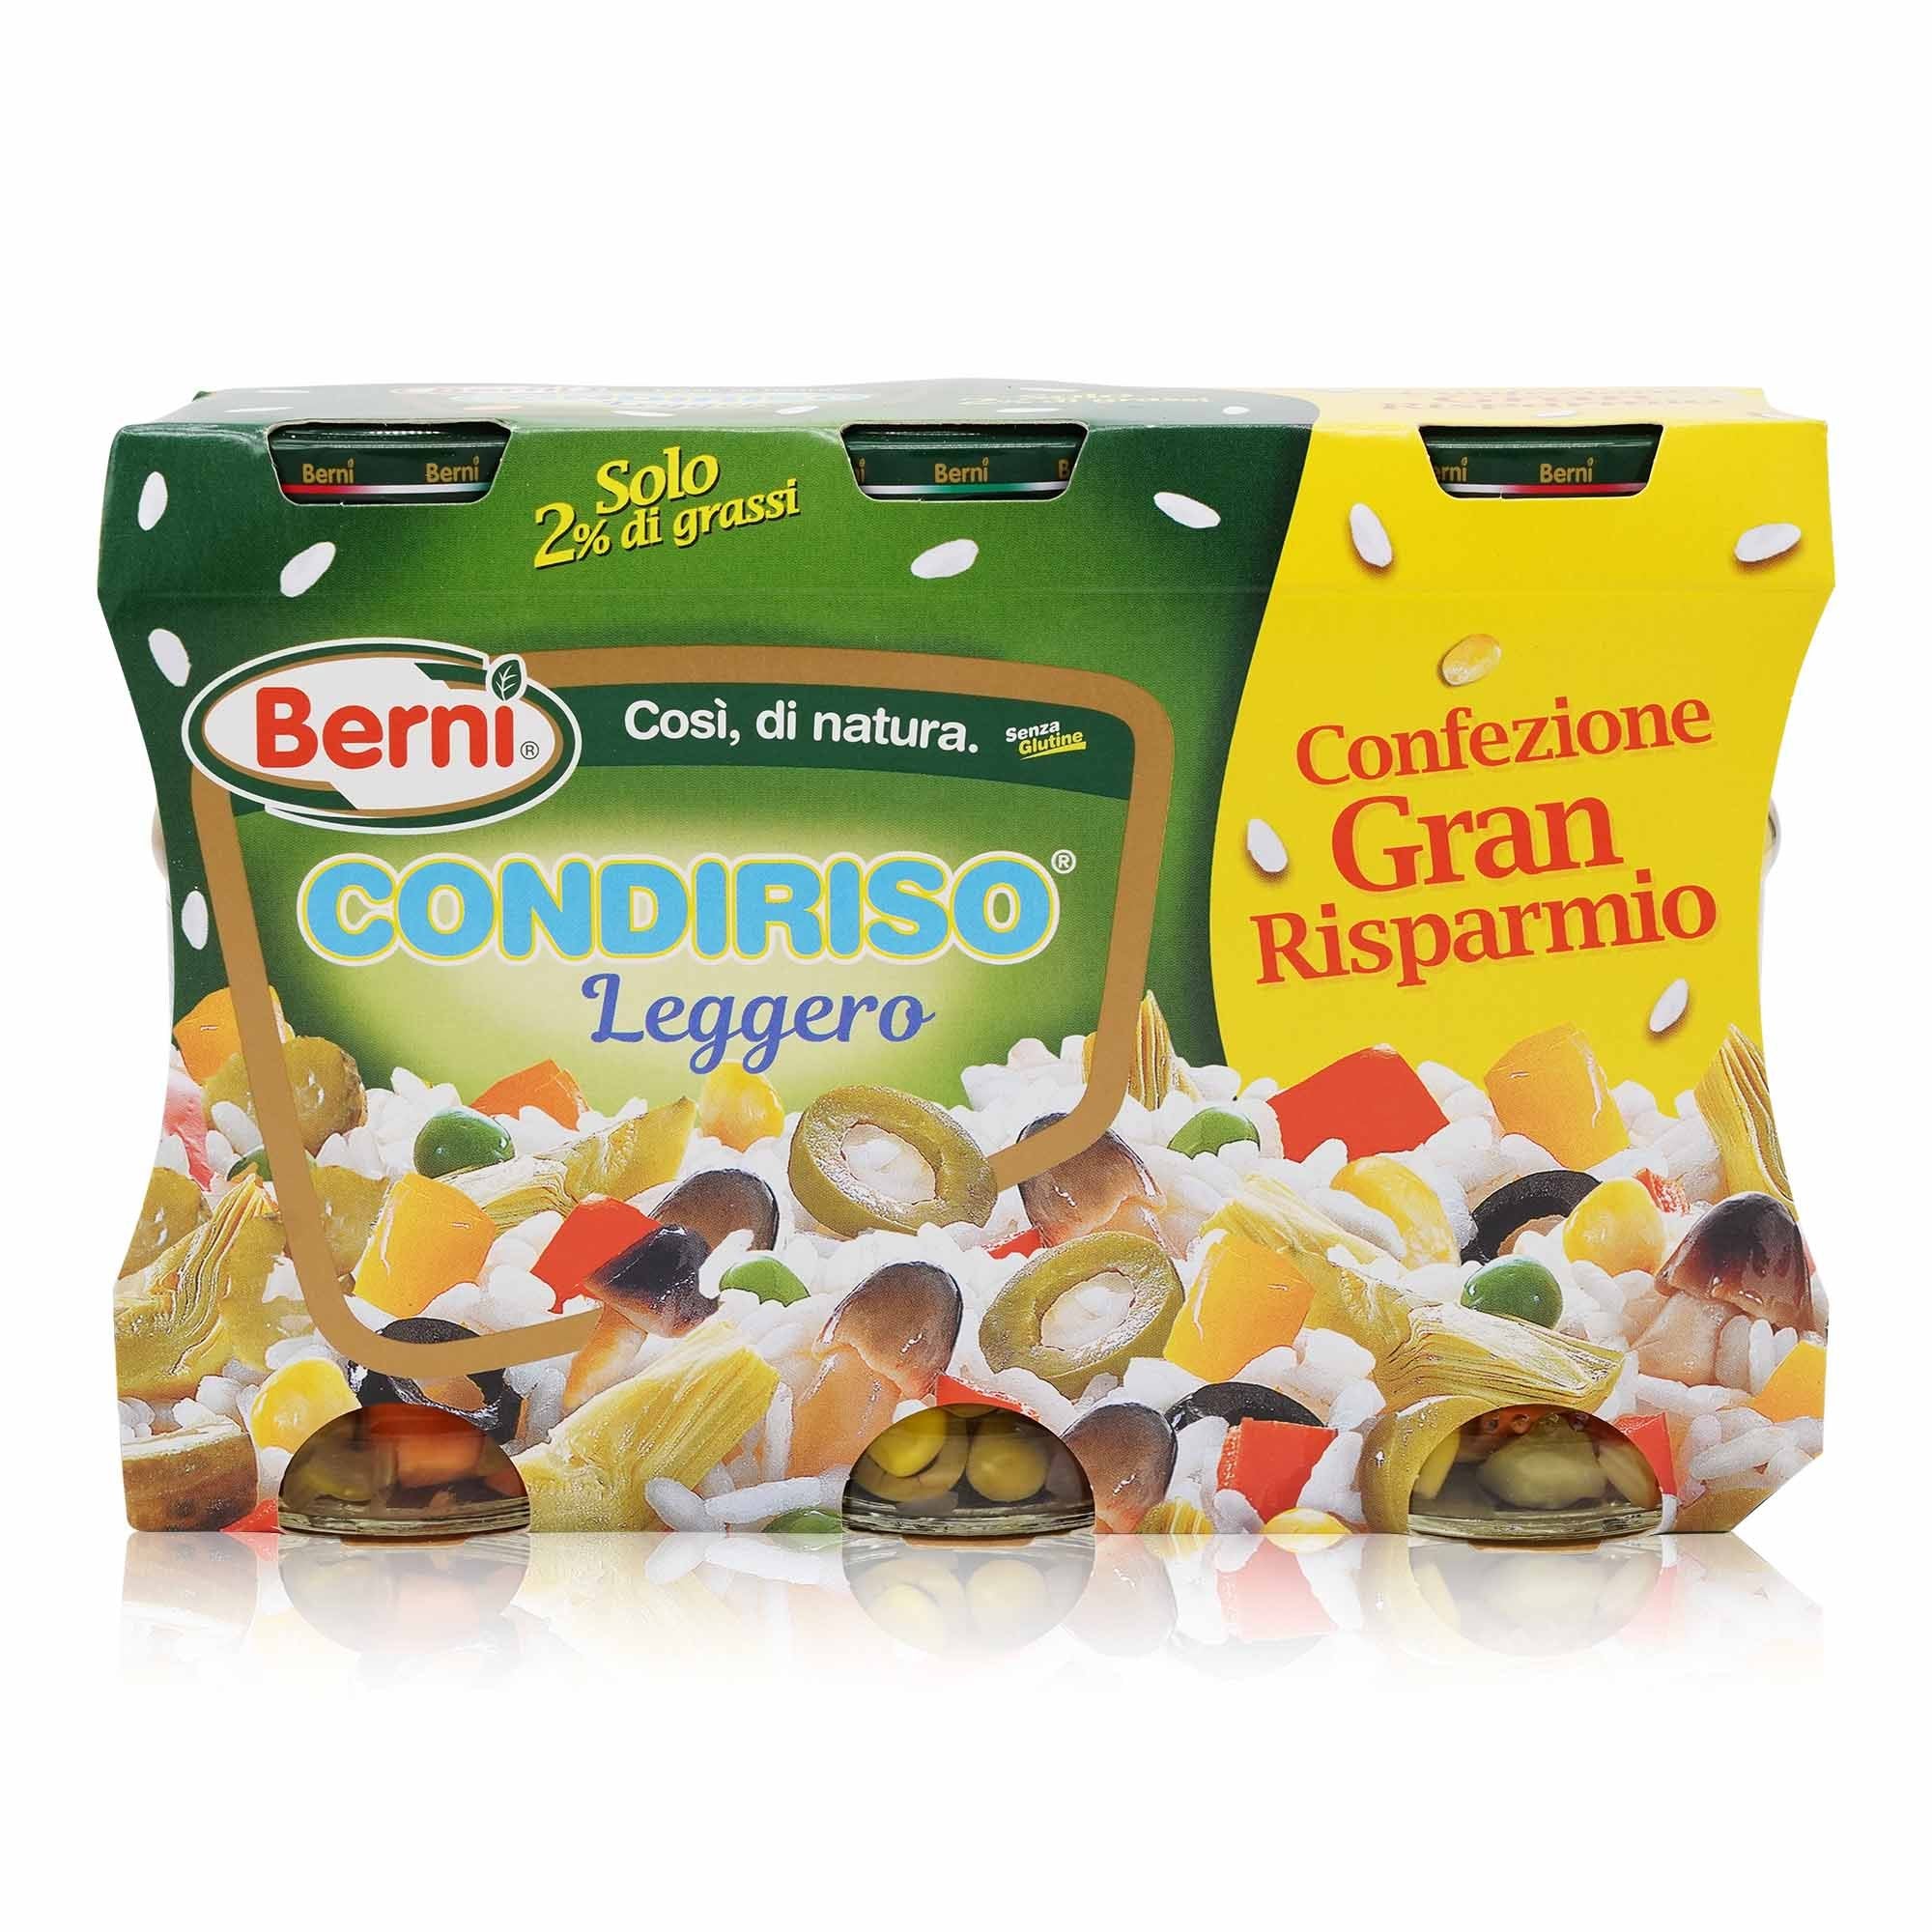 BERNI Condiriso leggero – Gemüsemix leicht für Reis - 0,9kg - italienisch-einkaufen.de